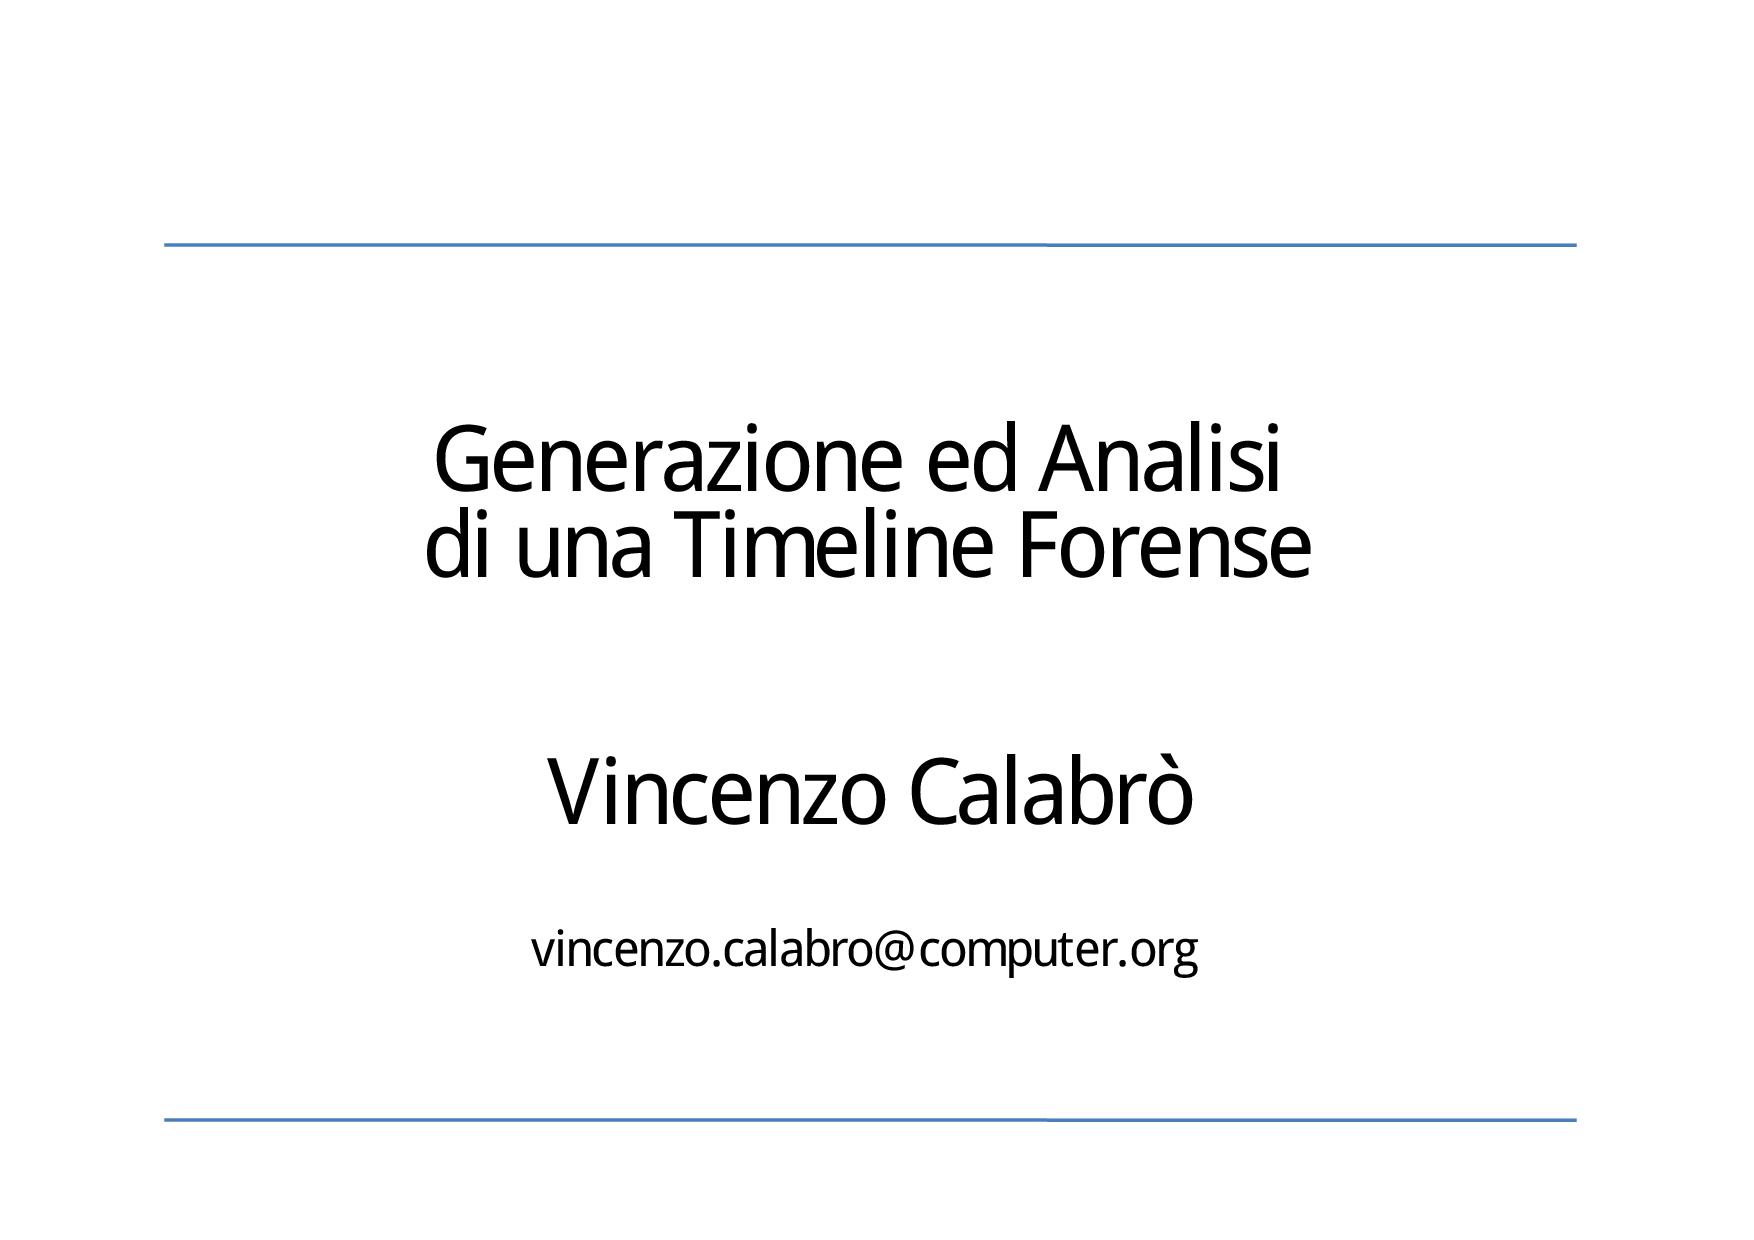 Vincenzo Calabro' | Generazione ed Analisi di una Timeline Forense